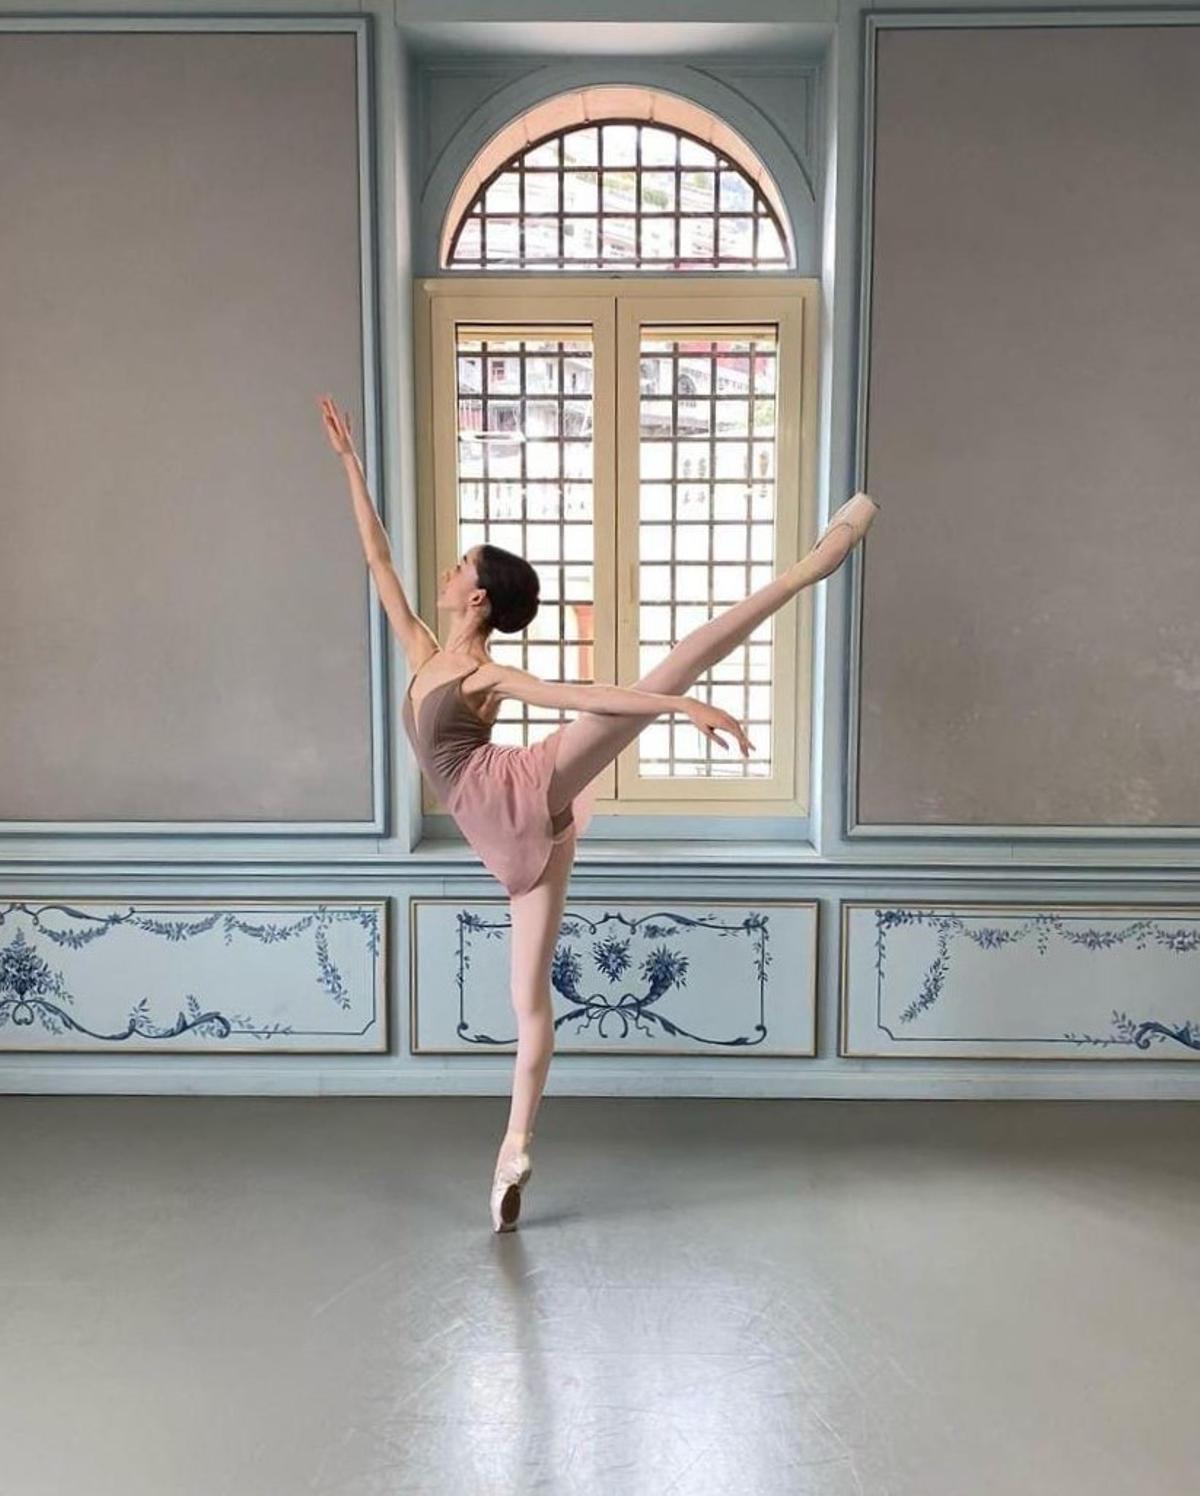 Una imagen de Carla bailando ballet clásico.